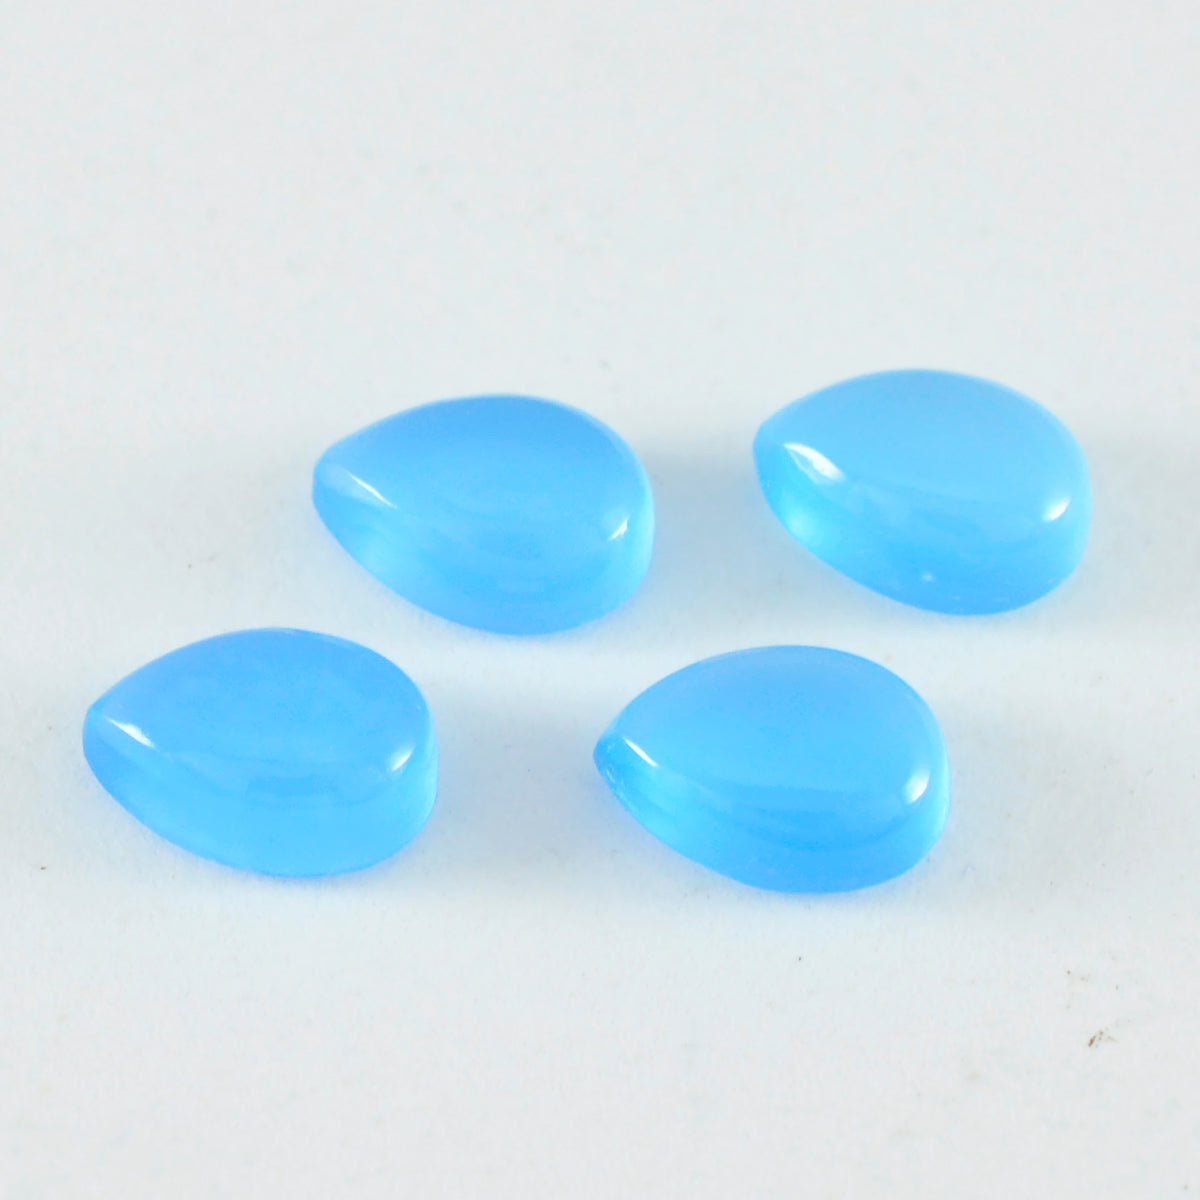 riyogems 1 шт., кабошон из синего халцедона, 6x9 мм, грушевидной формы, качество AAA, россыпь драгоценных камней